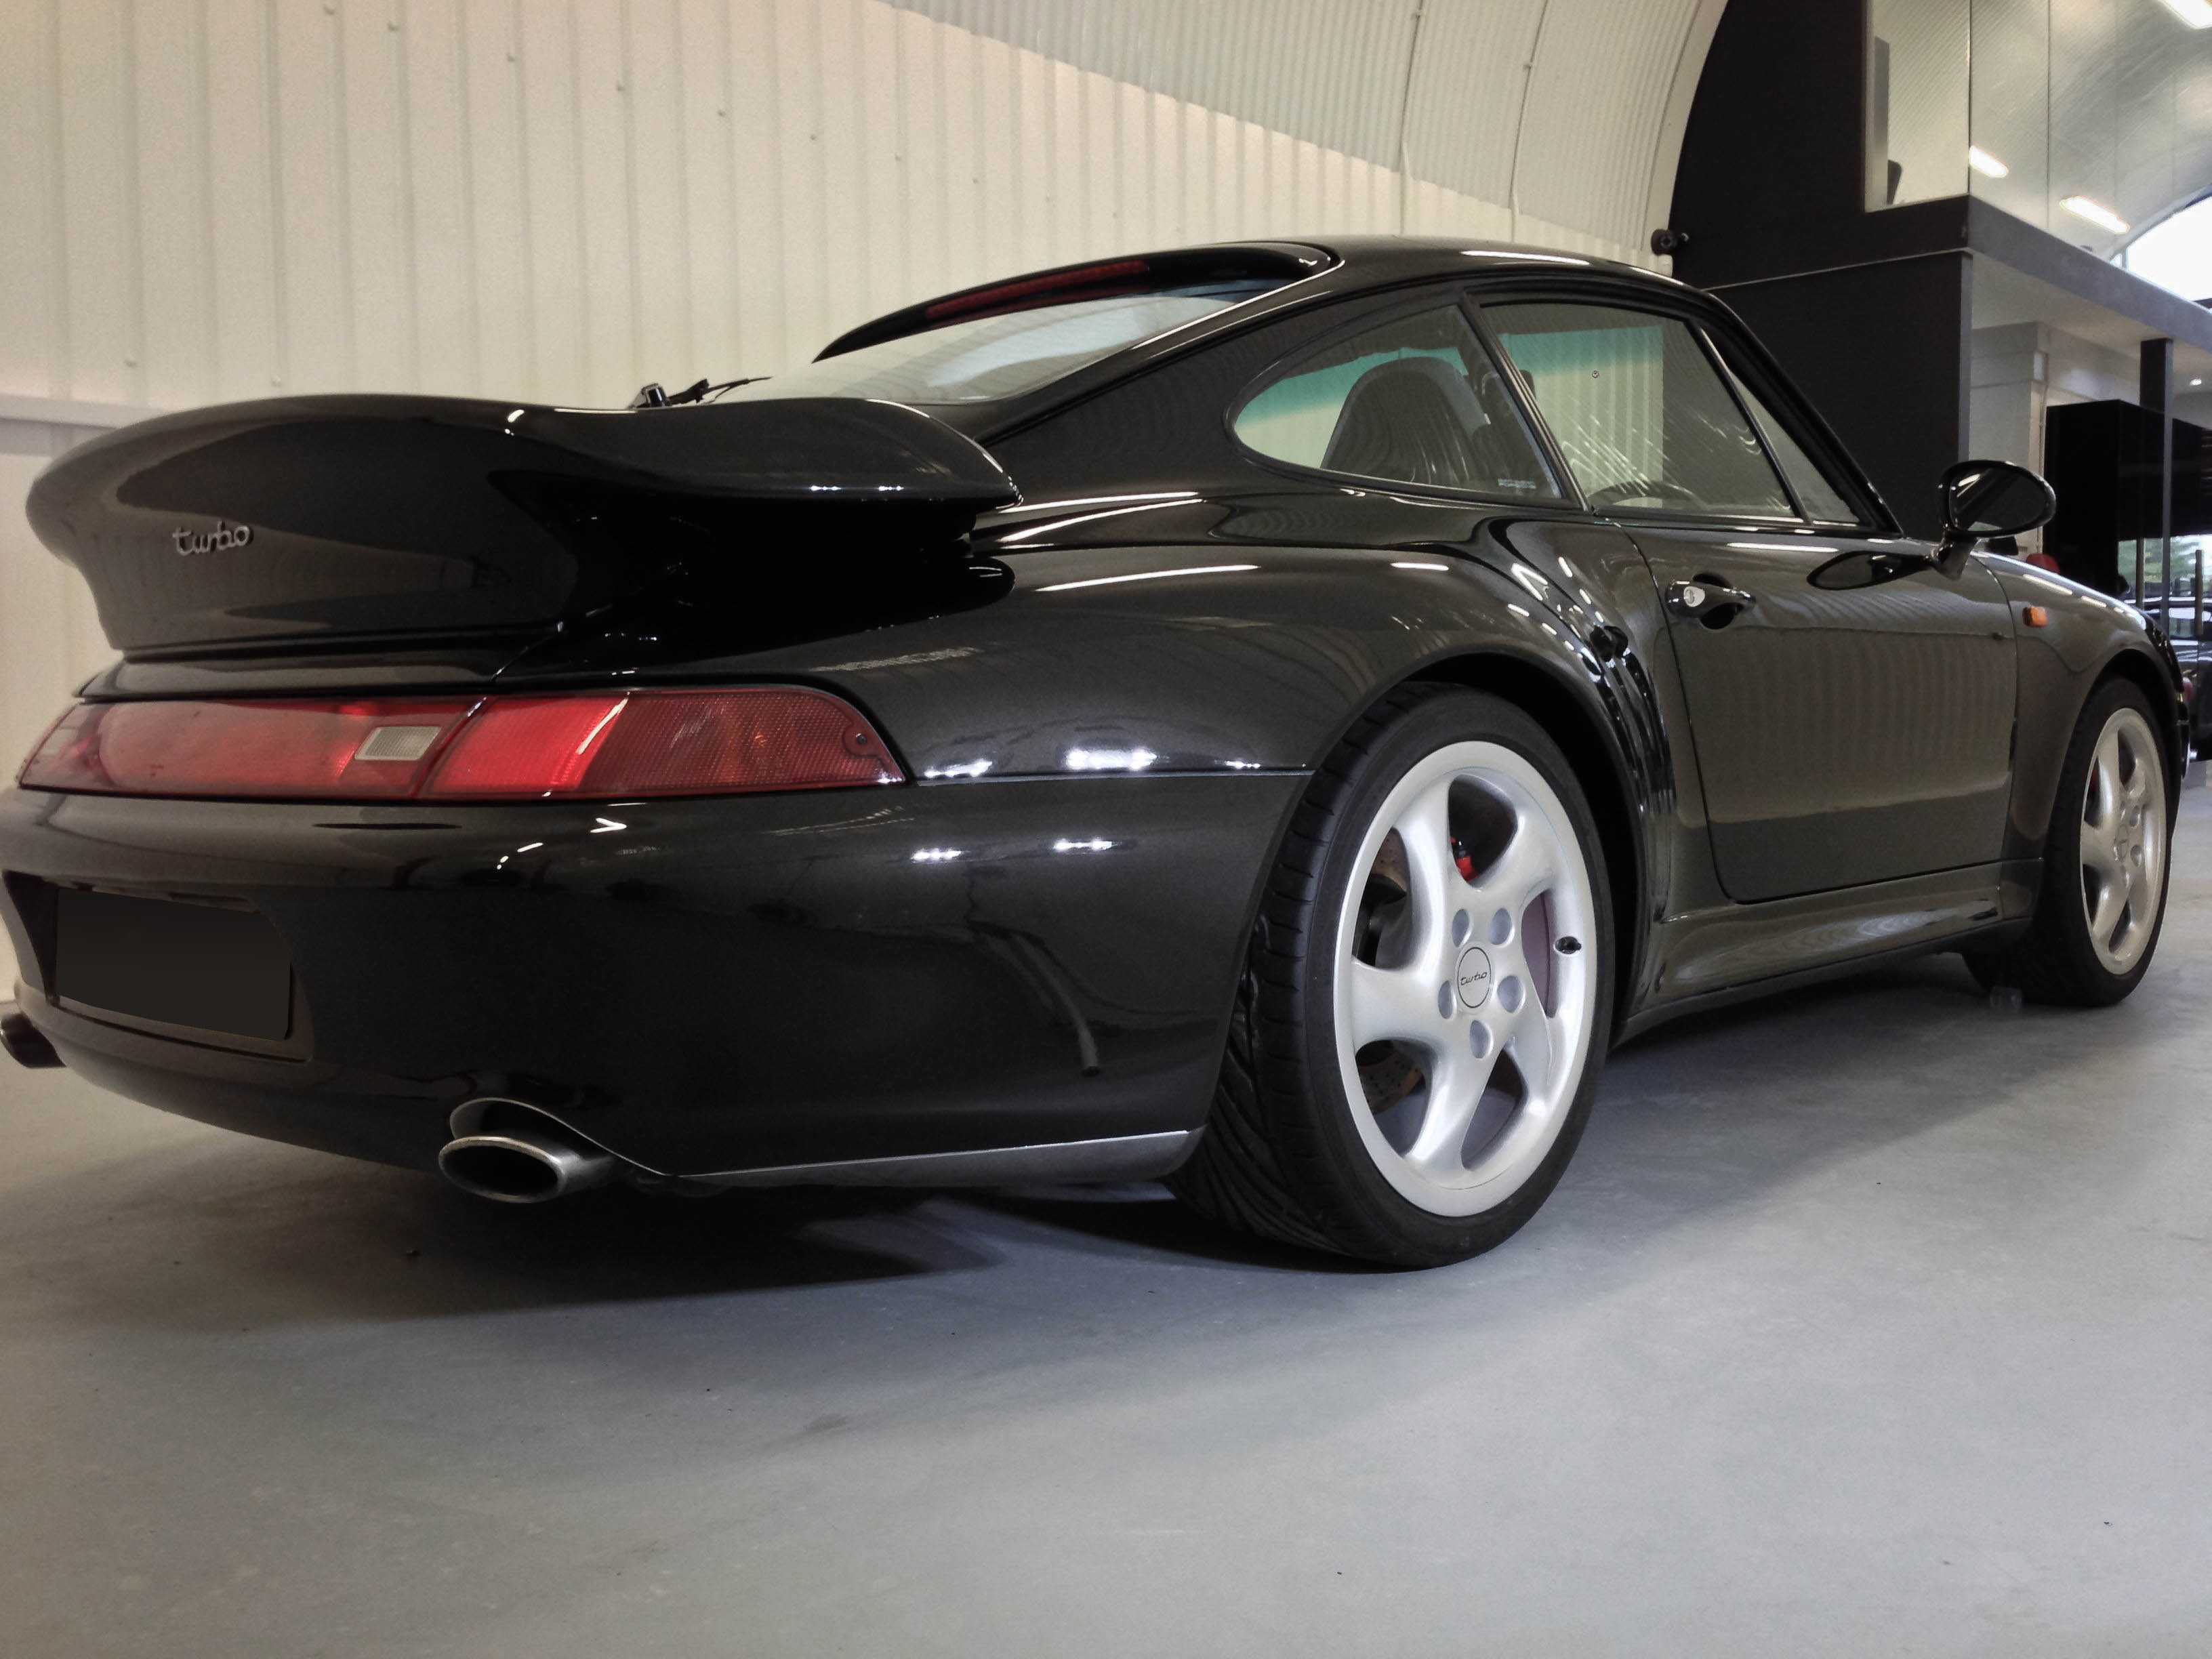 Porsche 911 Turbo – Rear